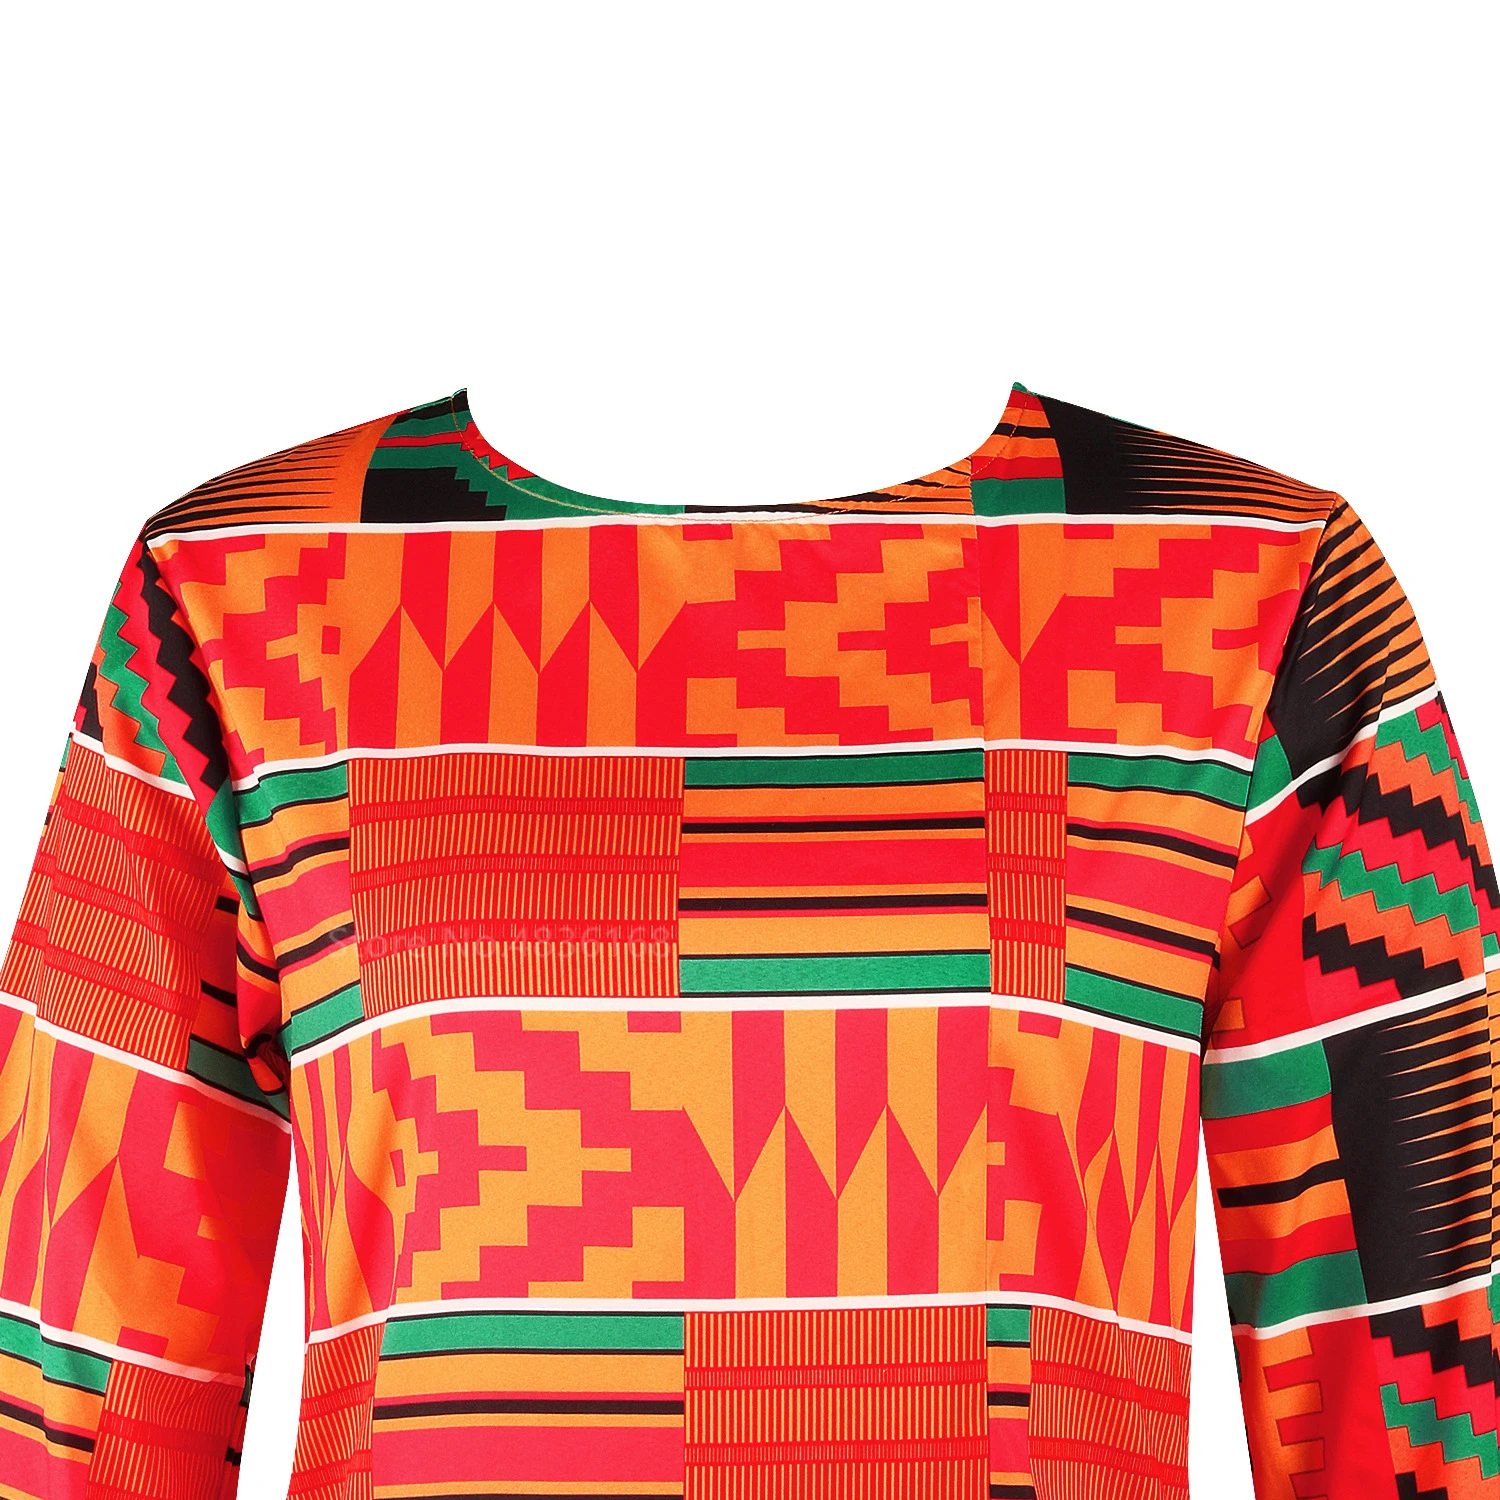 Африканская женская одежда Базен Риш Дашики футболка традиционный принт одежда Vestido Африка Анкара Стиль Топы модная блузка Футболка